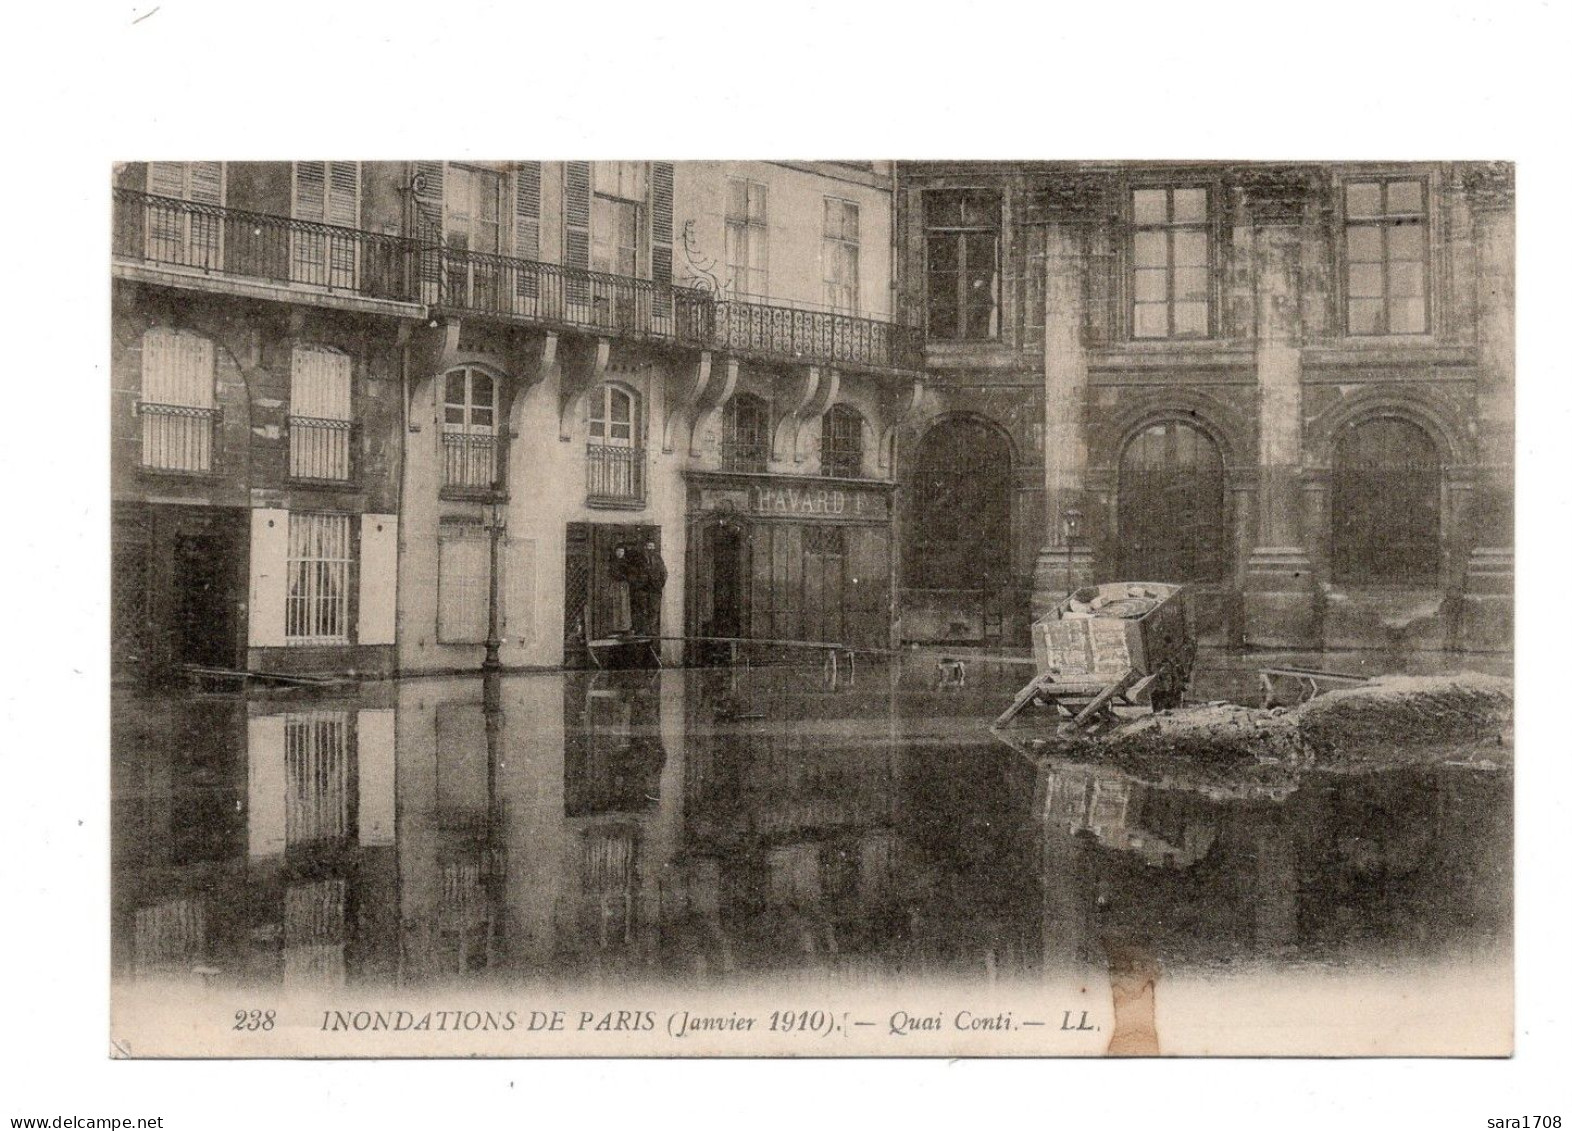 PARIS, Inondations De 1910. Quai Conti. - Paris Flood, 1910